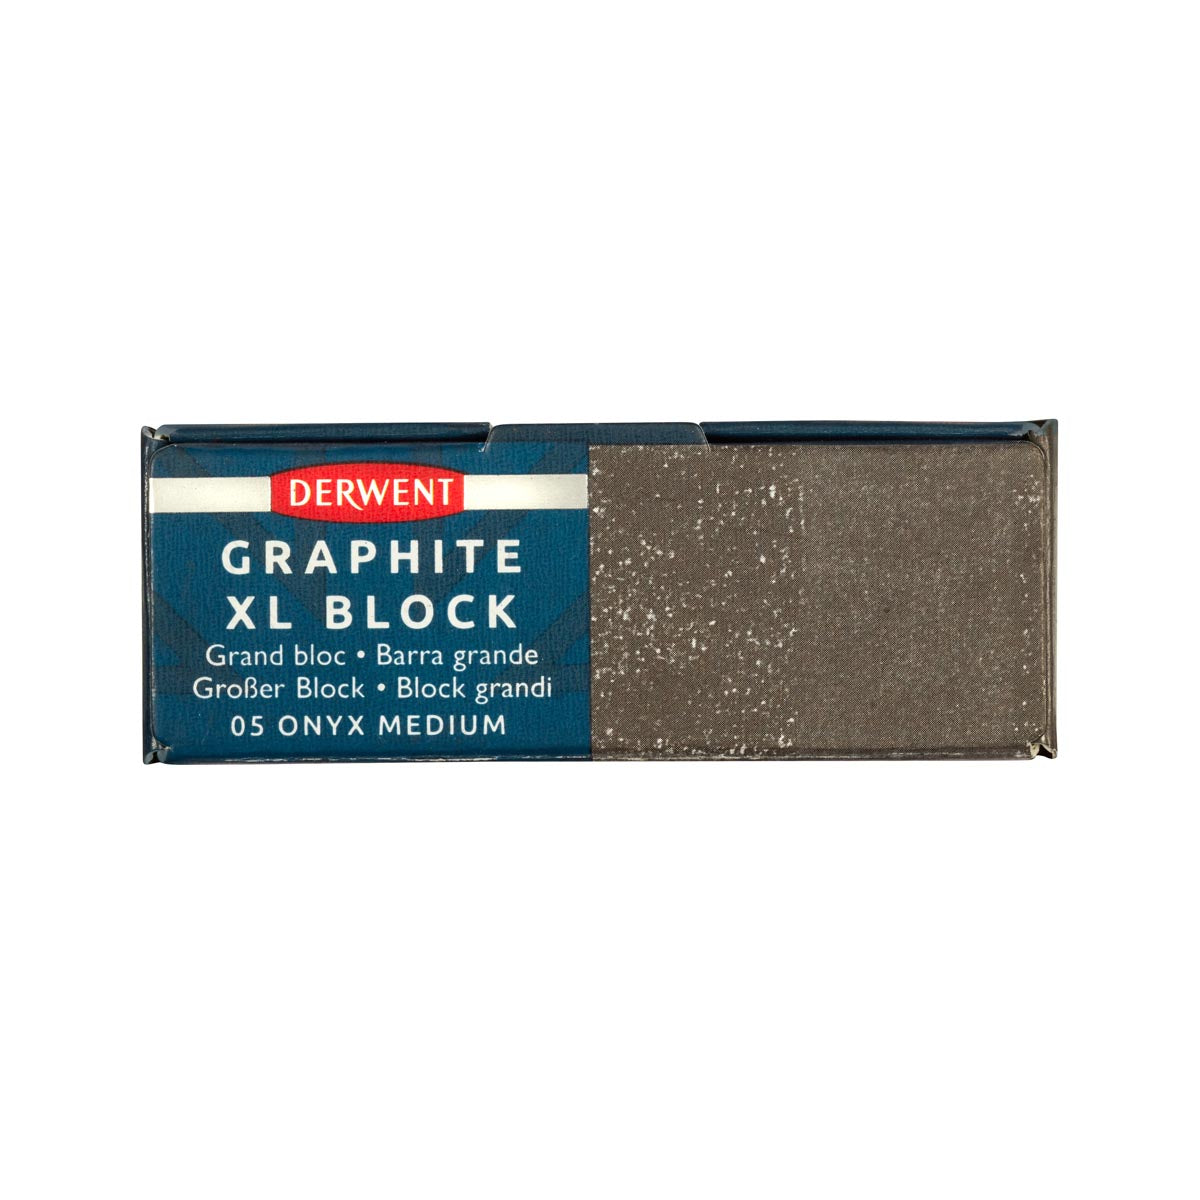 Derwent - Graphite XL Block - Onyx Medium